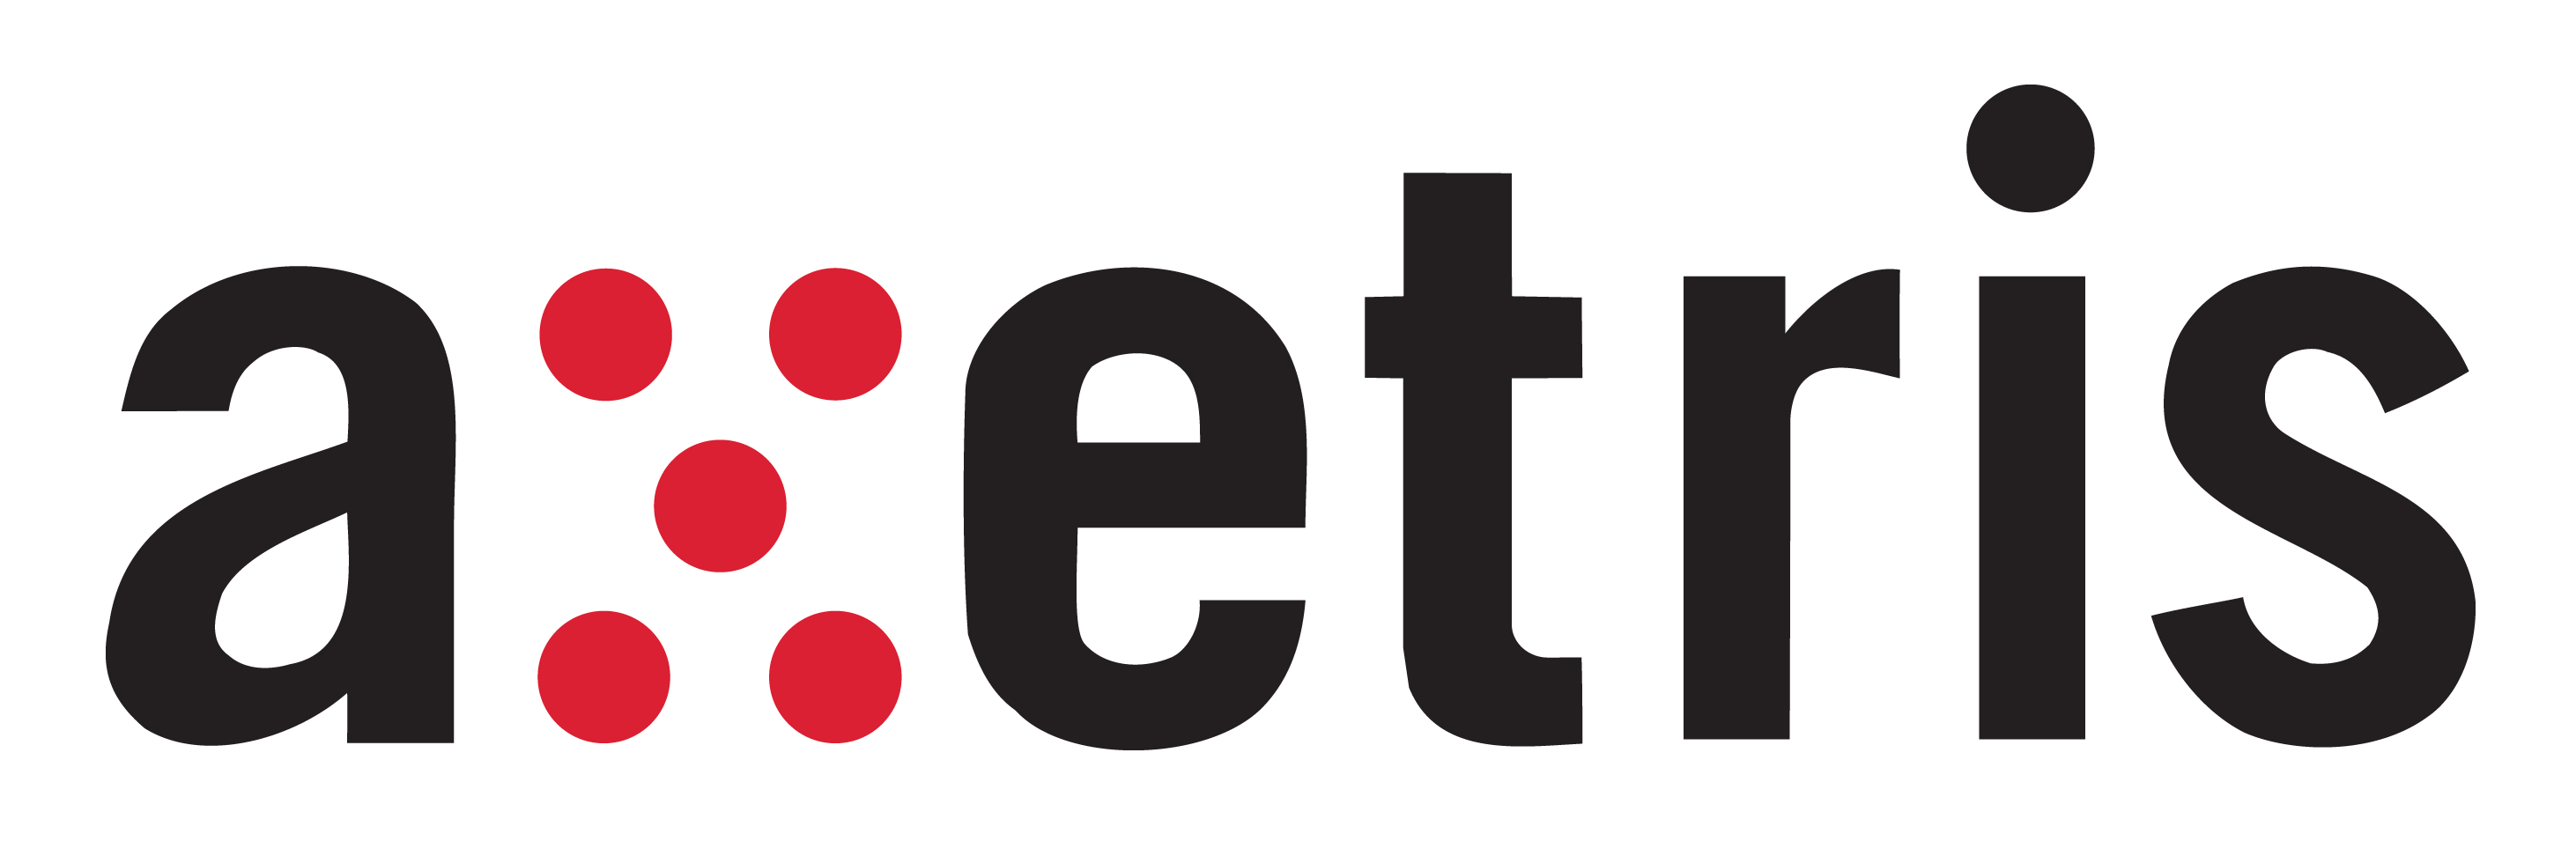 Axetris Logo